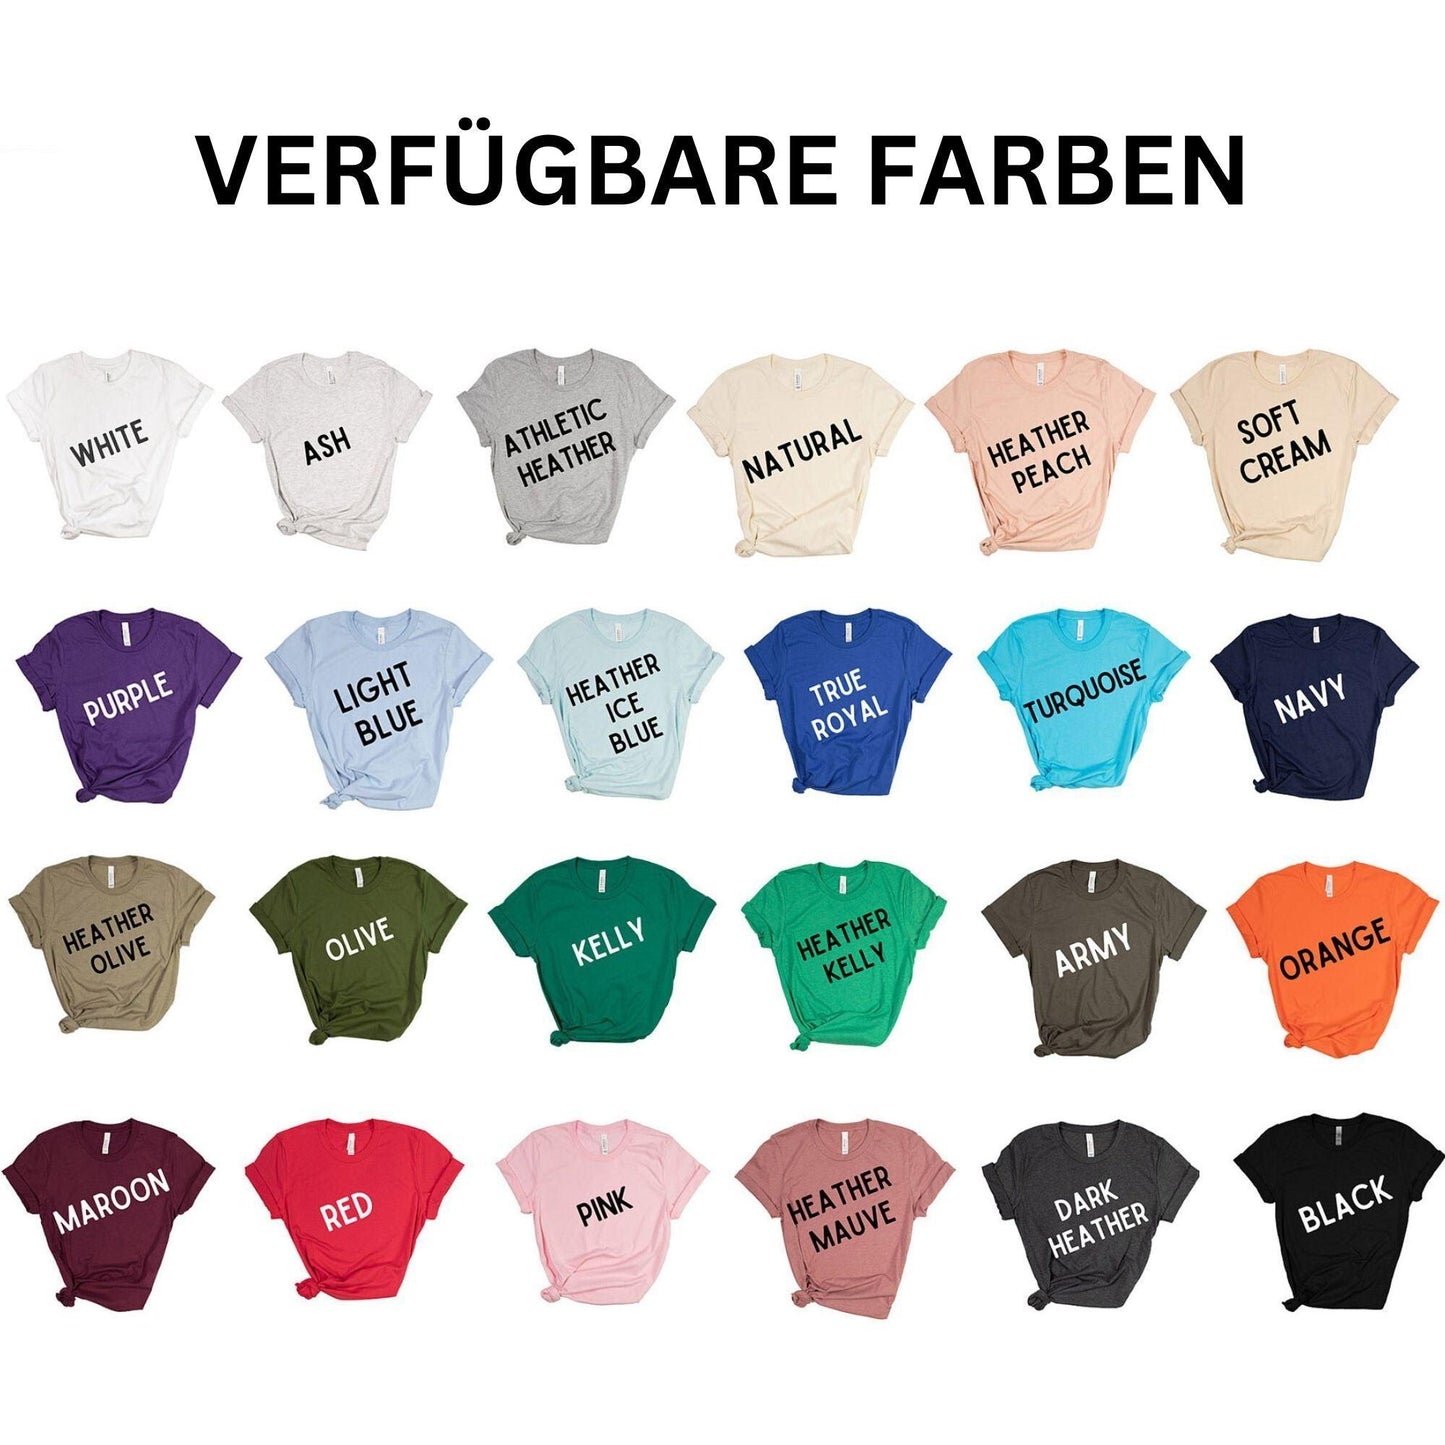 Opa-Stolz: Personalisiertes Shirt mit Namen der Kinder und Geburtsjahr